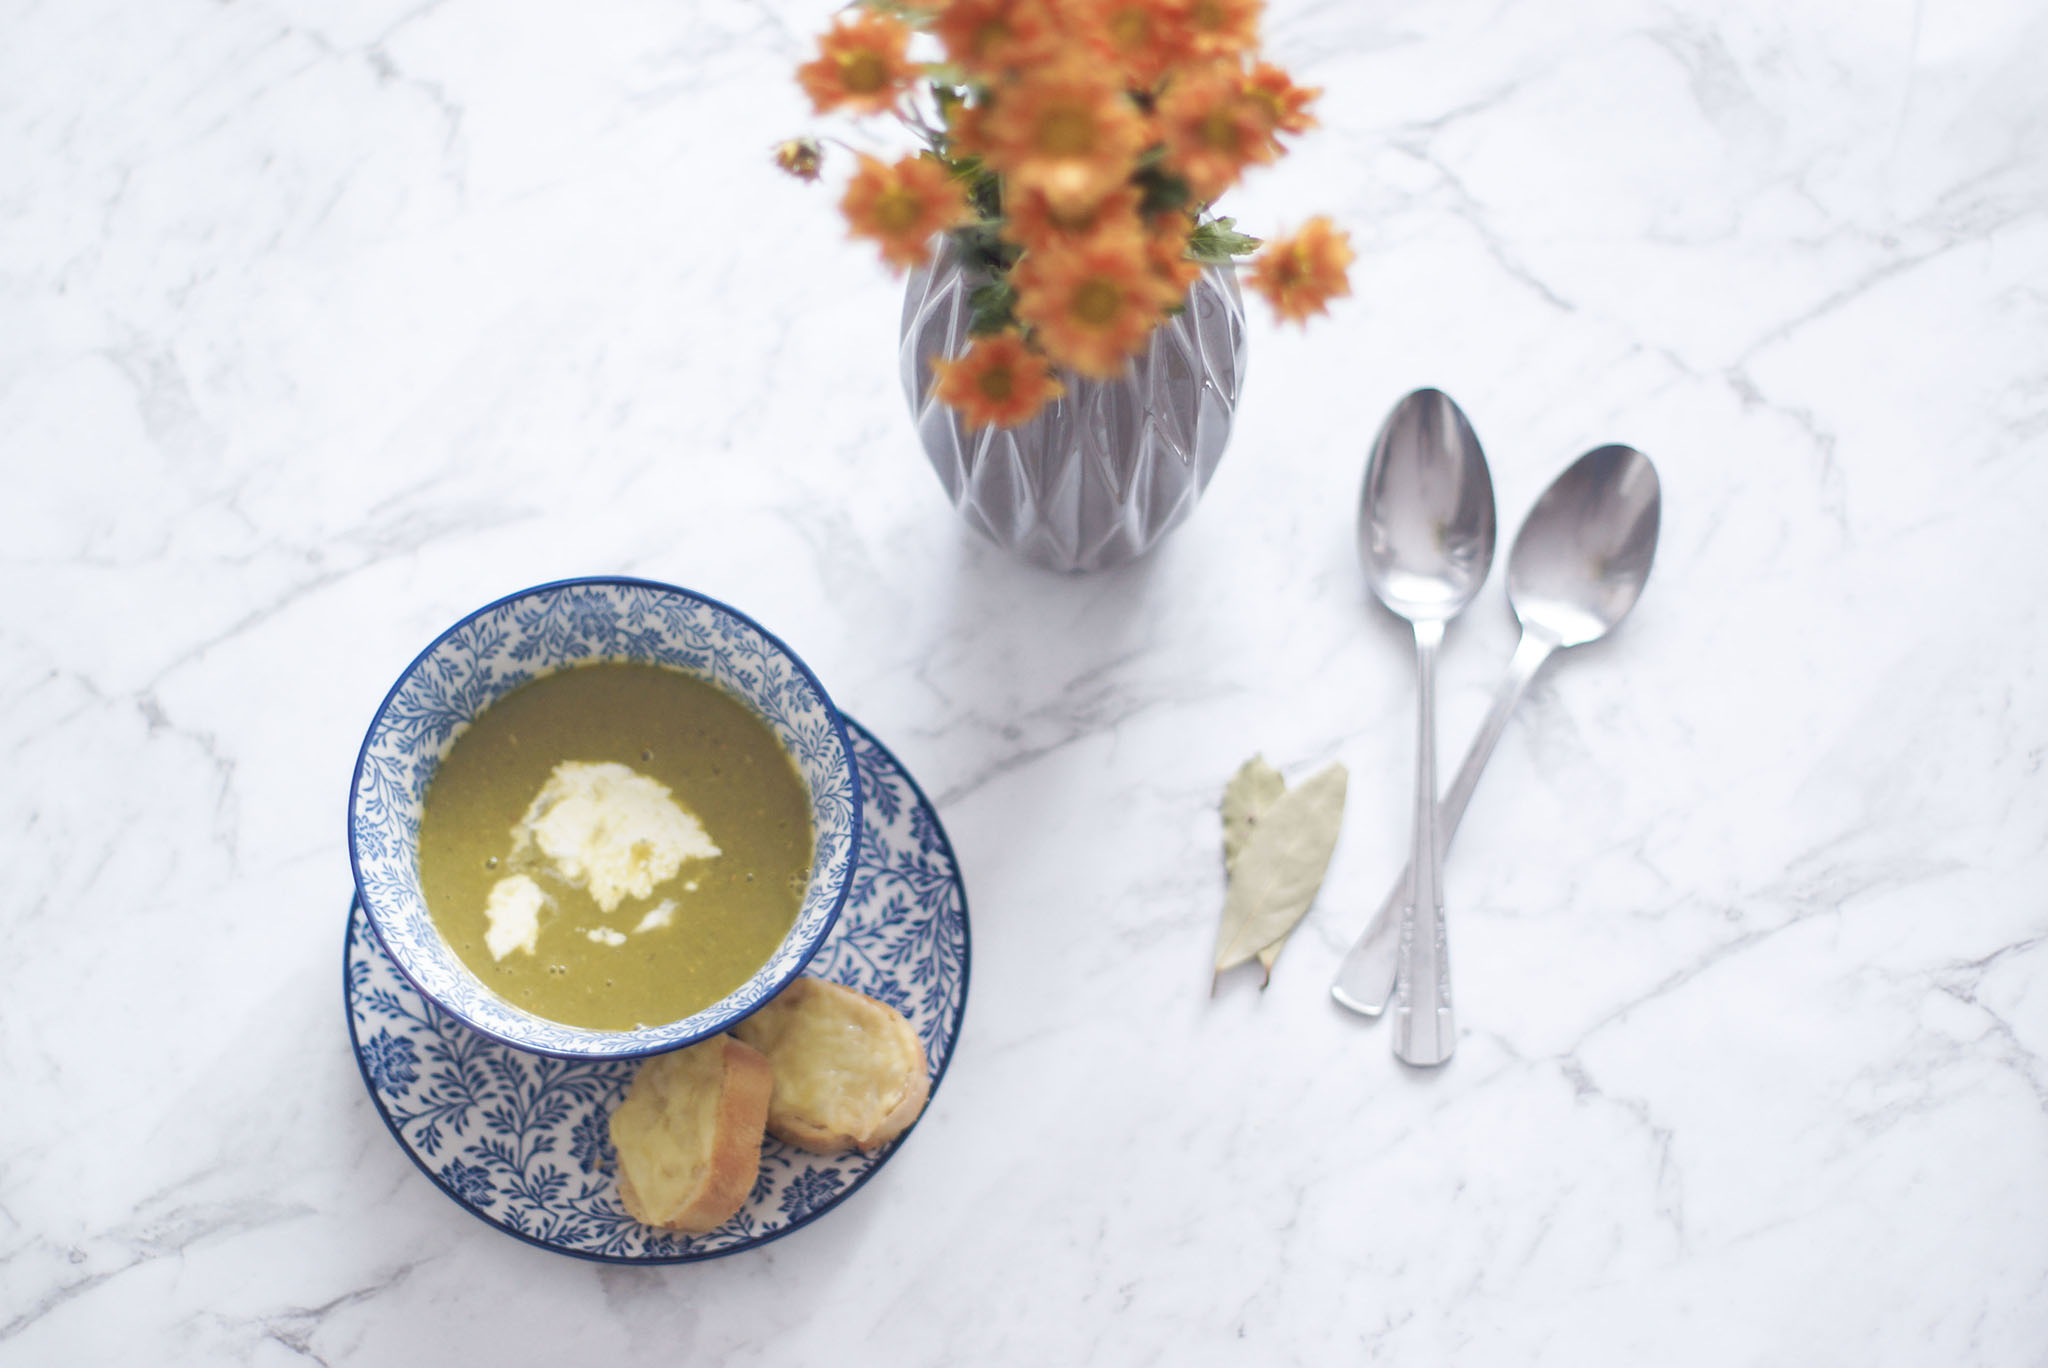 zupa krem z zielonego groszku, jesienna zupa, zupa na jesień, jak zrobić, obiad w 15 minut